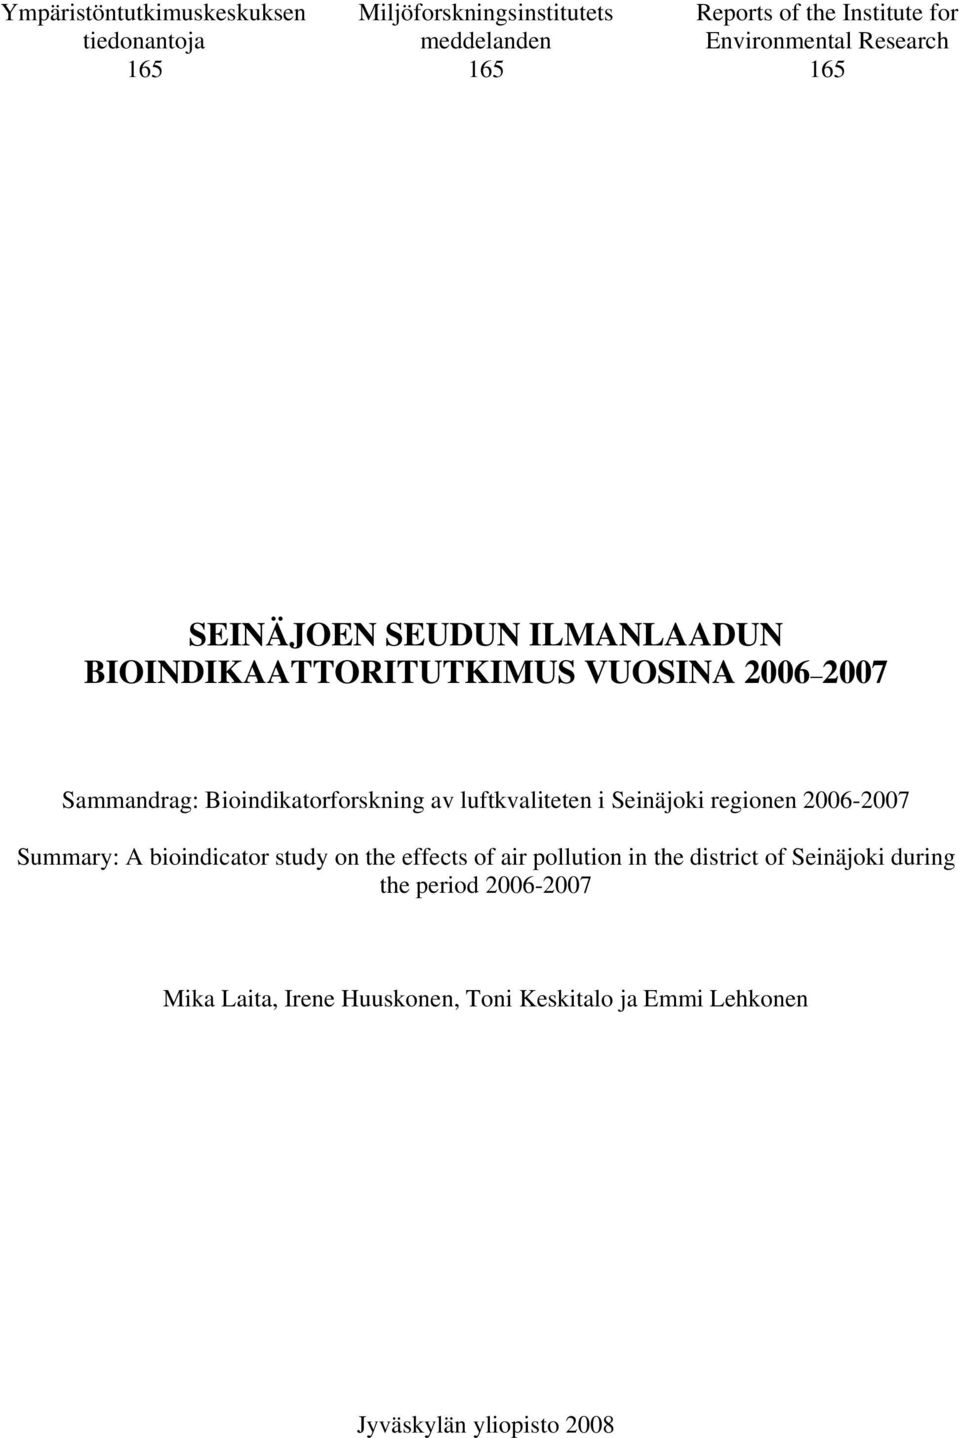 Bioindikatorforskning av luftkvaliteten i Seinäjoki regionen 2006-2007 Summary: A bioindicator study on the effects of air